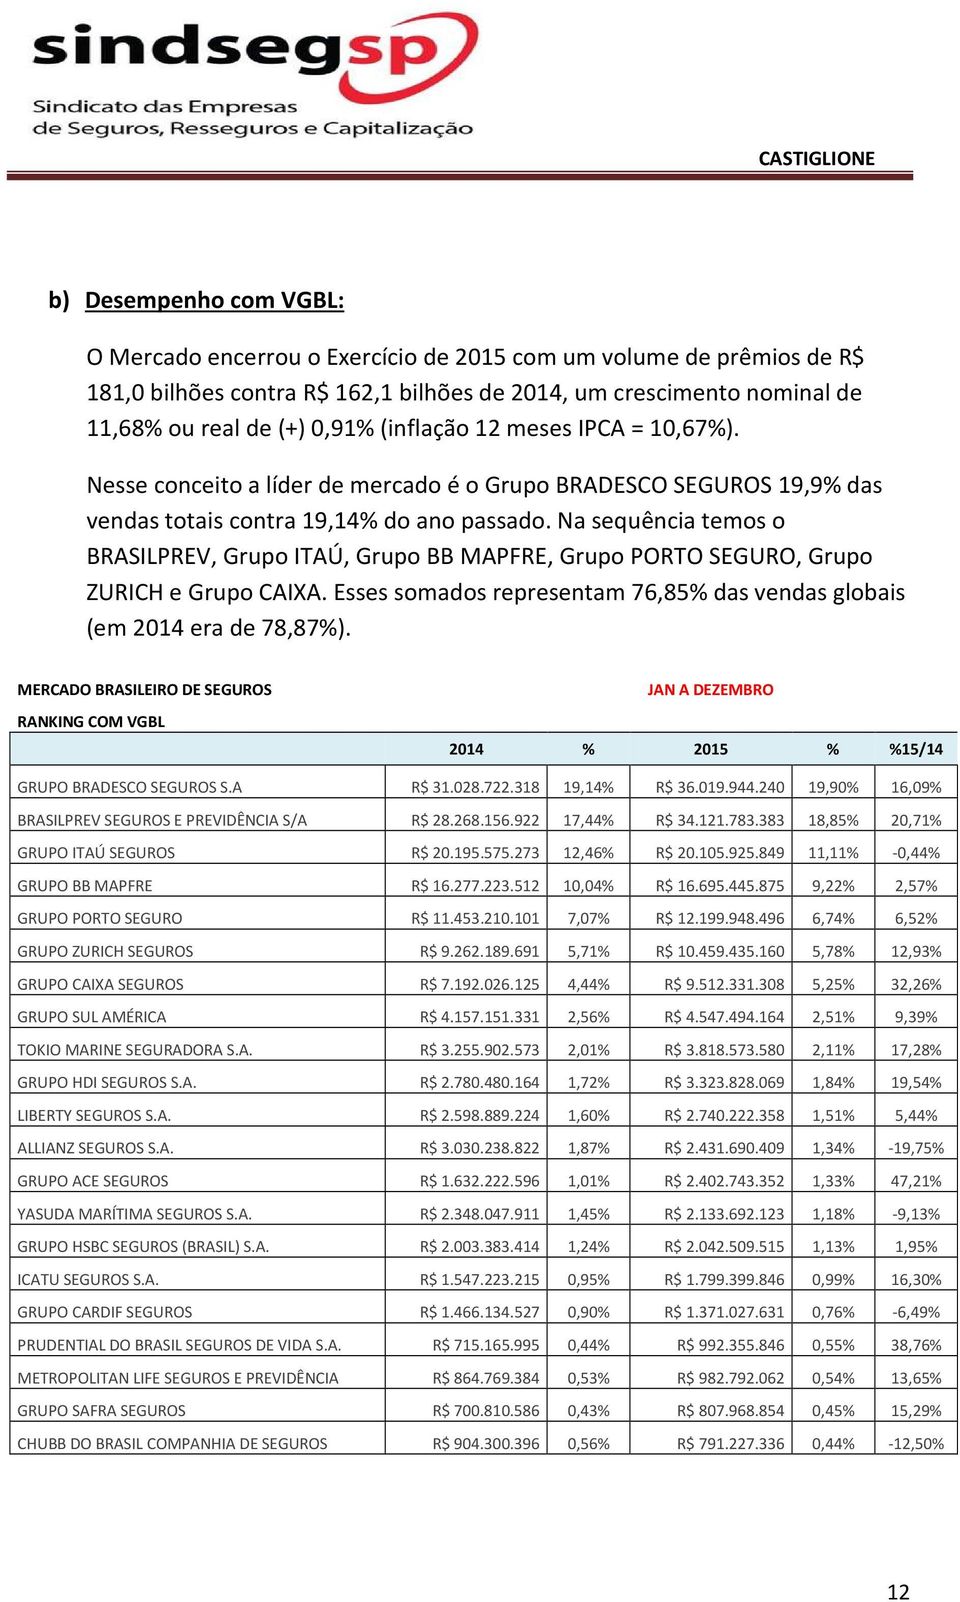 Na sequência temos o BRASILPREV, Grupo ITAÚ, Grupo BB MAPFRE, Grupo PORTO SEGURO, Grupo ZURICH e Grupo CAIXA. Esses somados representam 76,85% das vendas globais (em 2014 era de 78,87%).